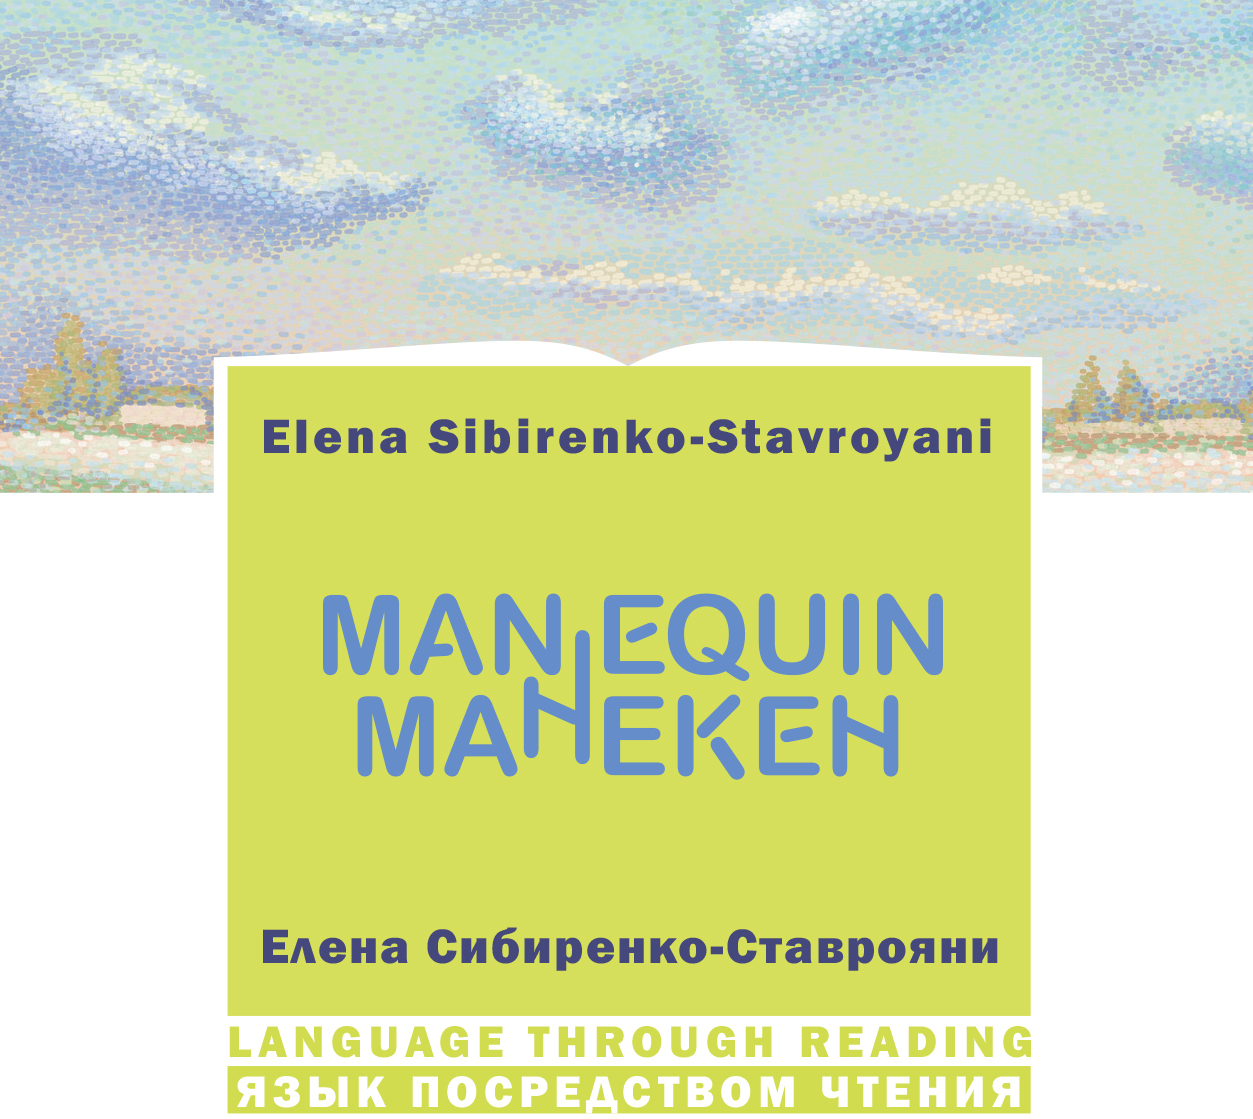 Издательство Станица представляет новую двуязычную книгу Манекен